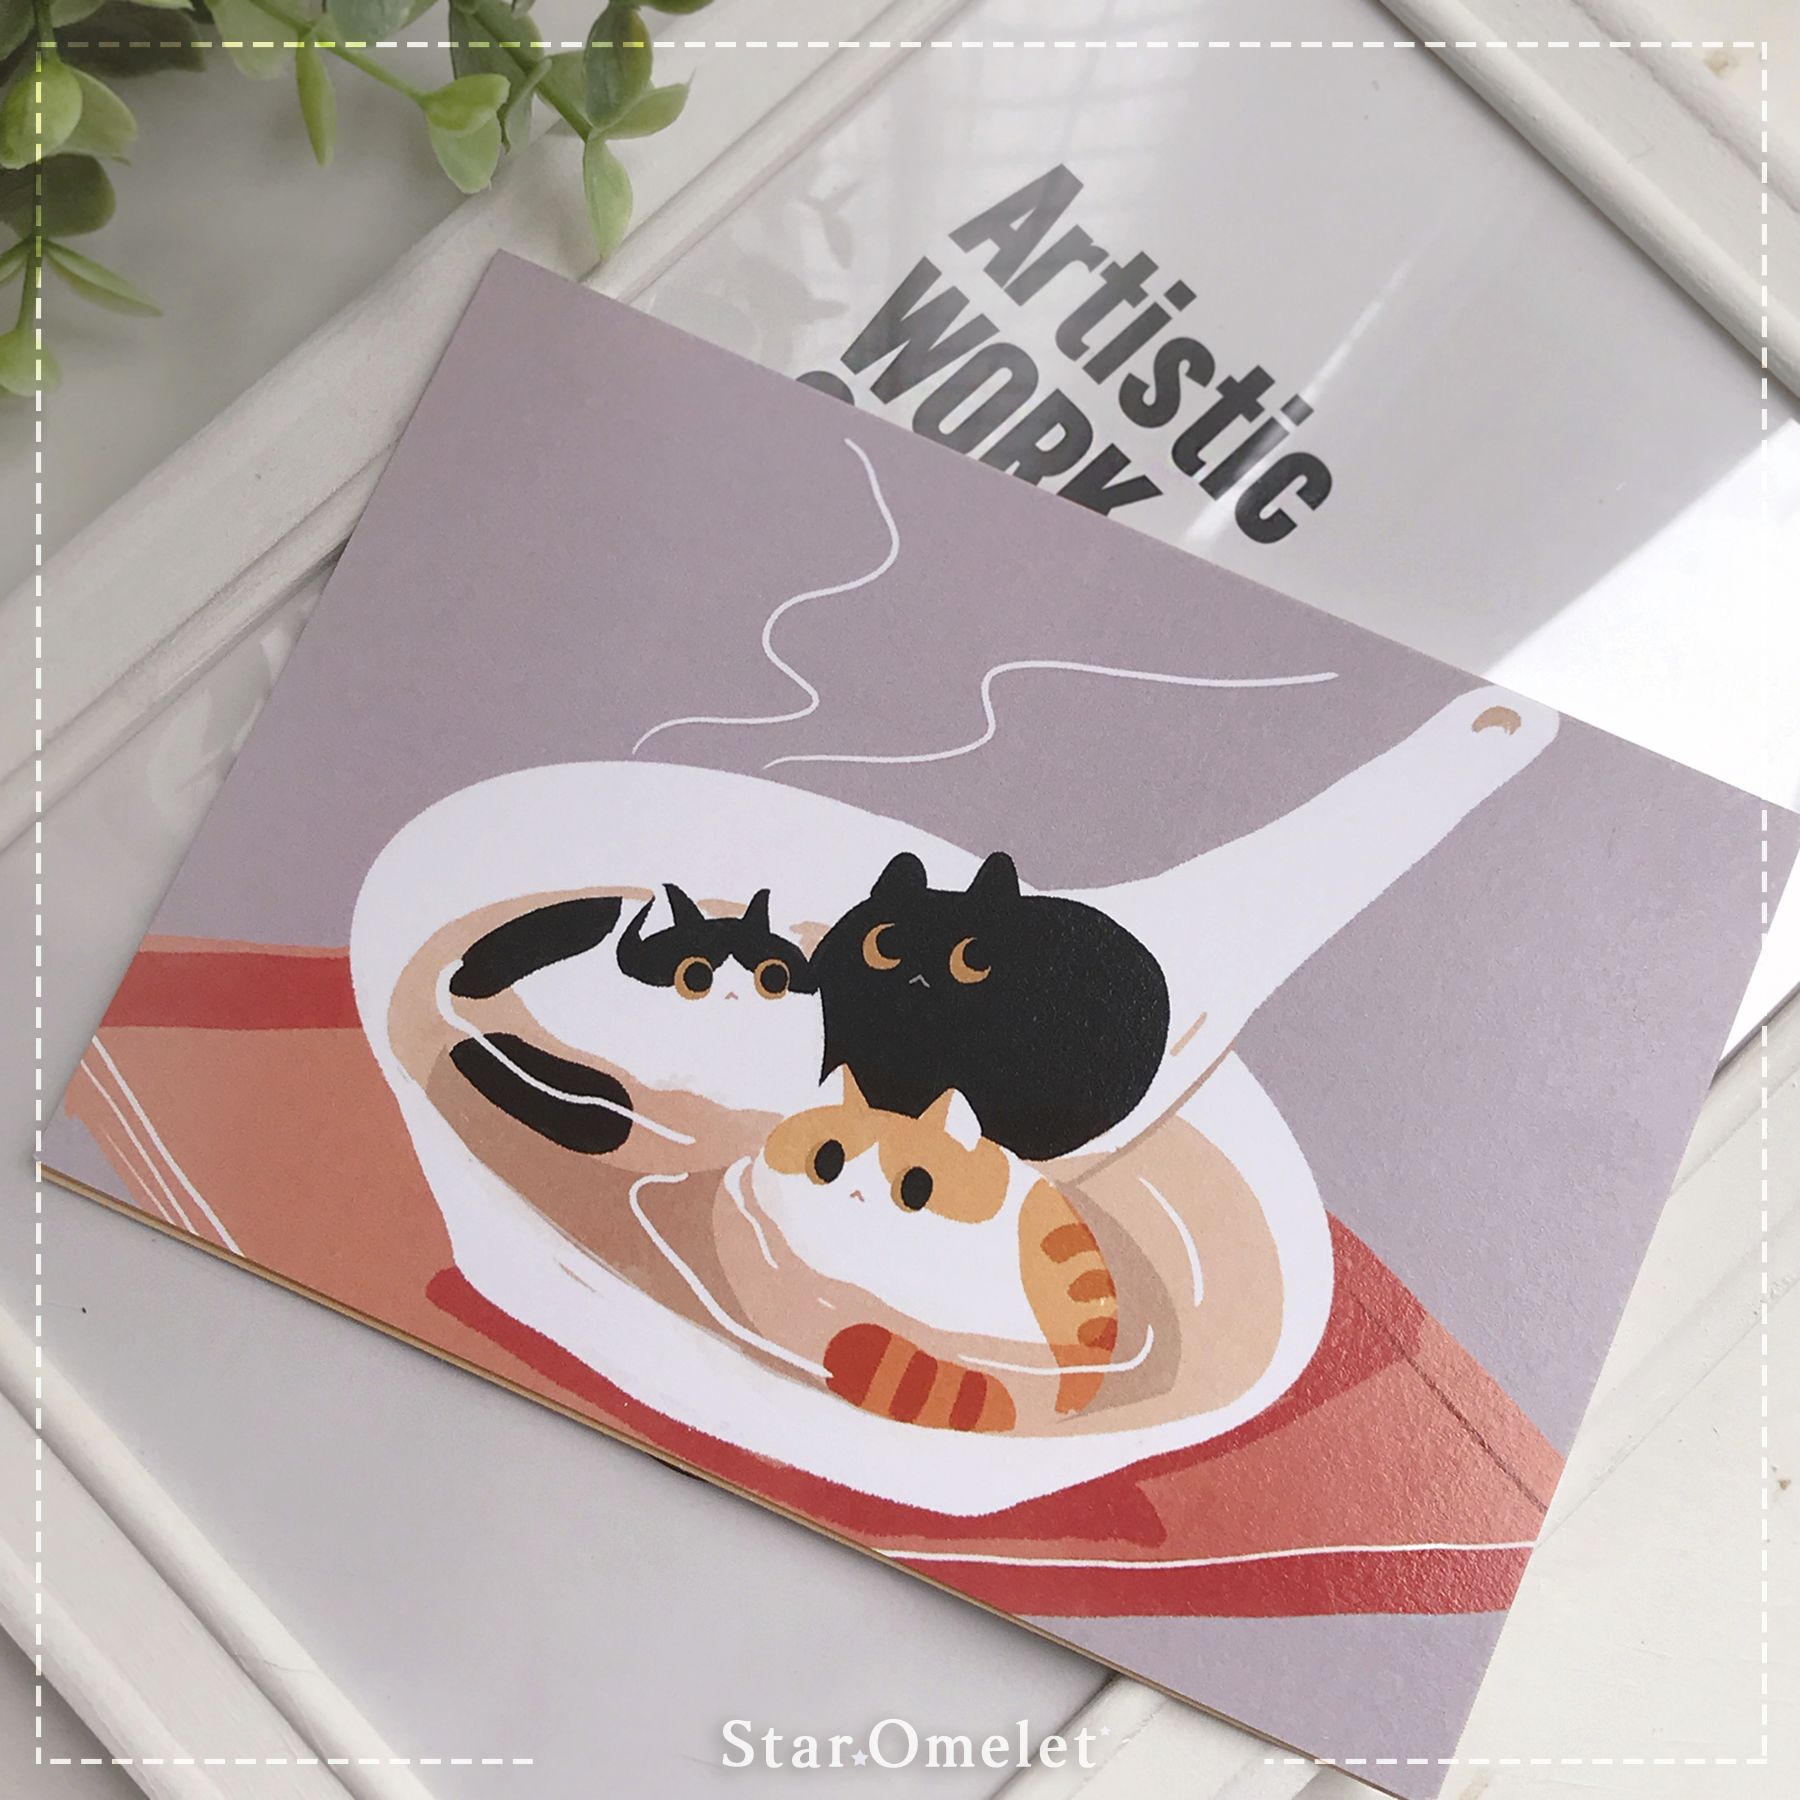 Ryü aka Rio（哩喔）原創 貓貓 櫻桃萊姆果醬系列 間諜湯圓 酷卡 明信片